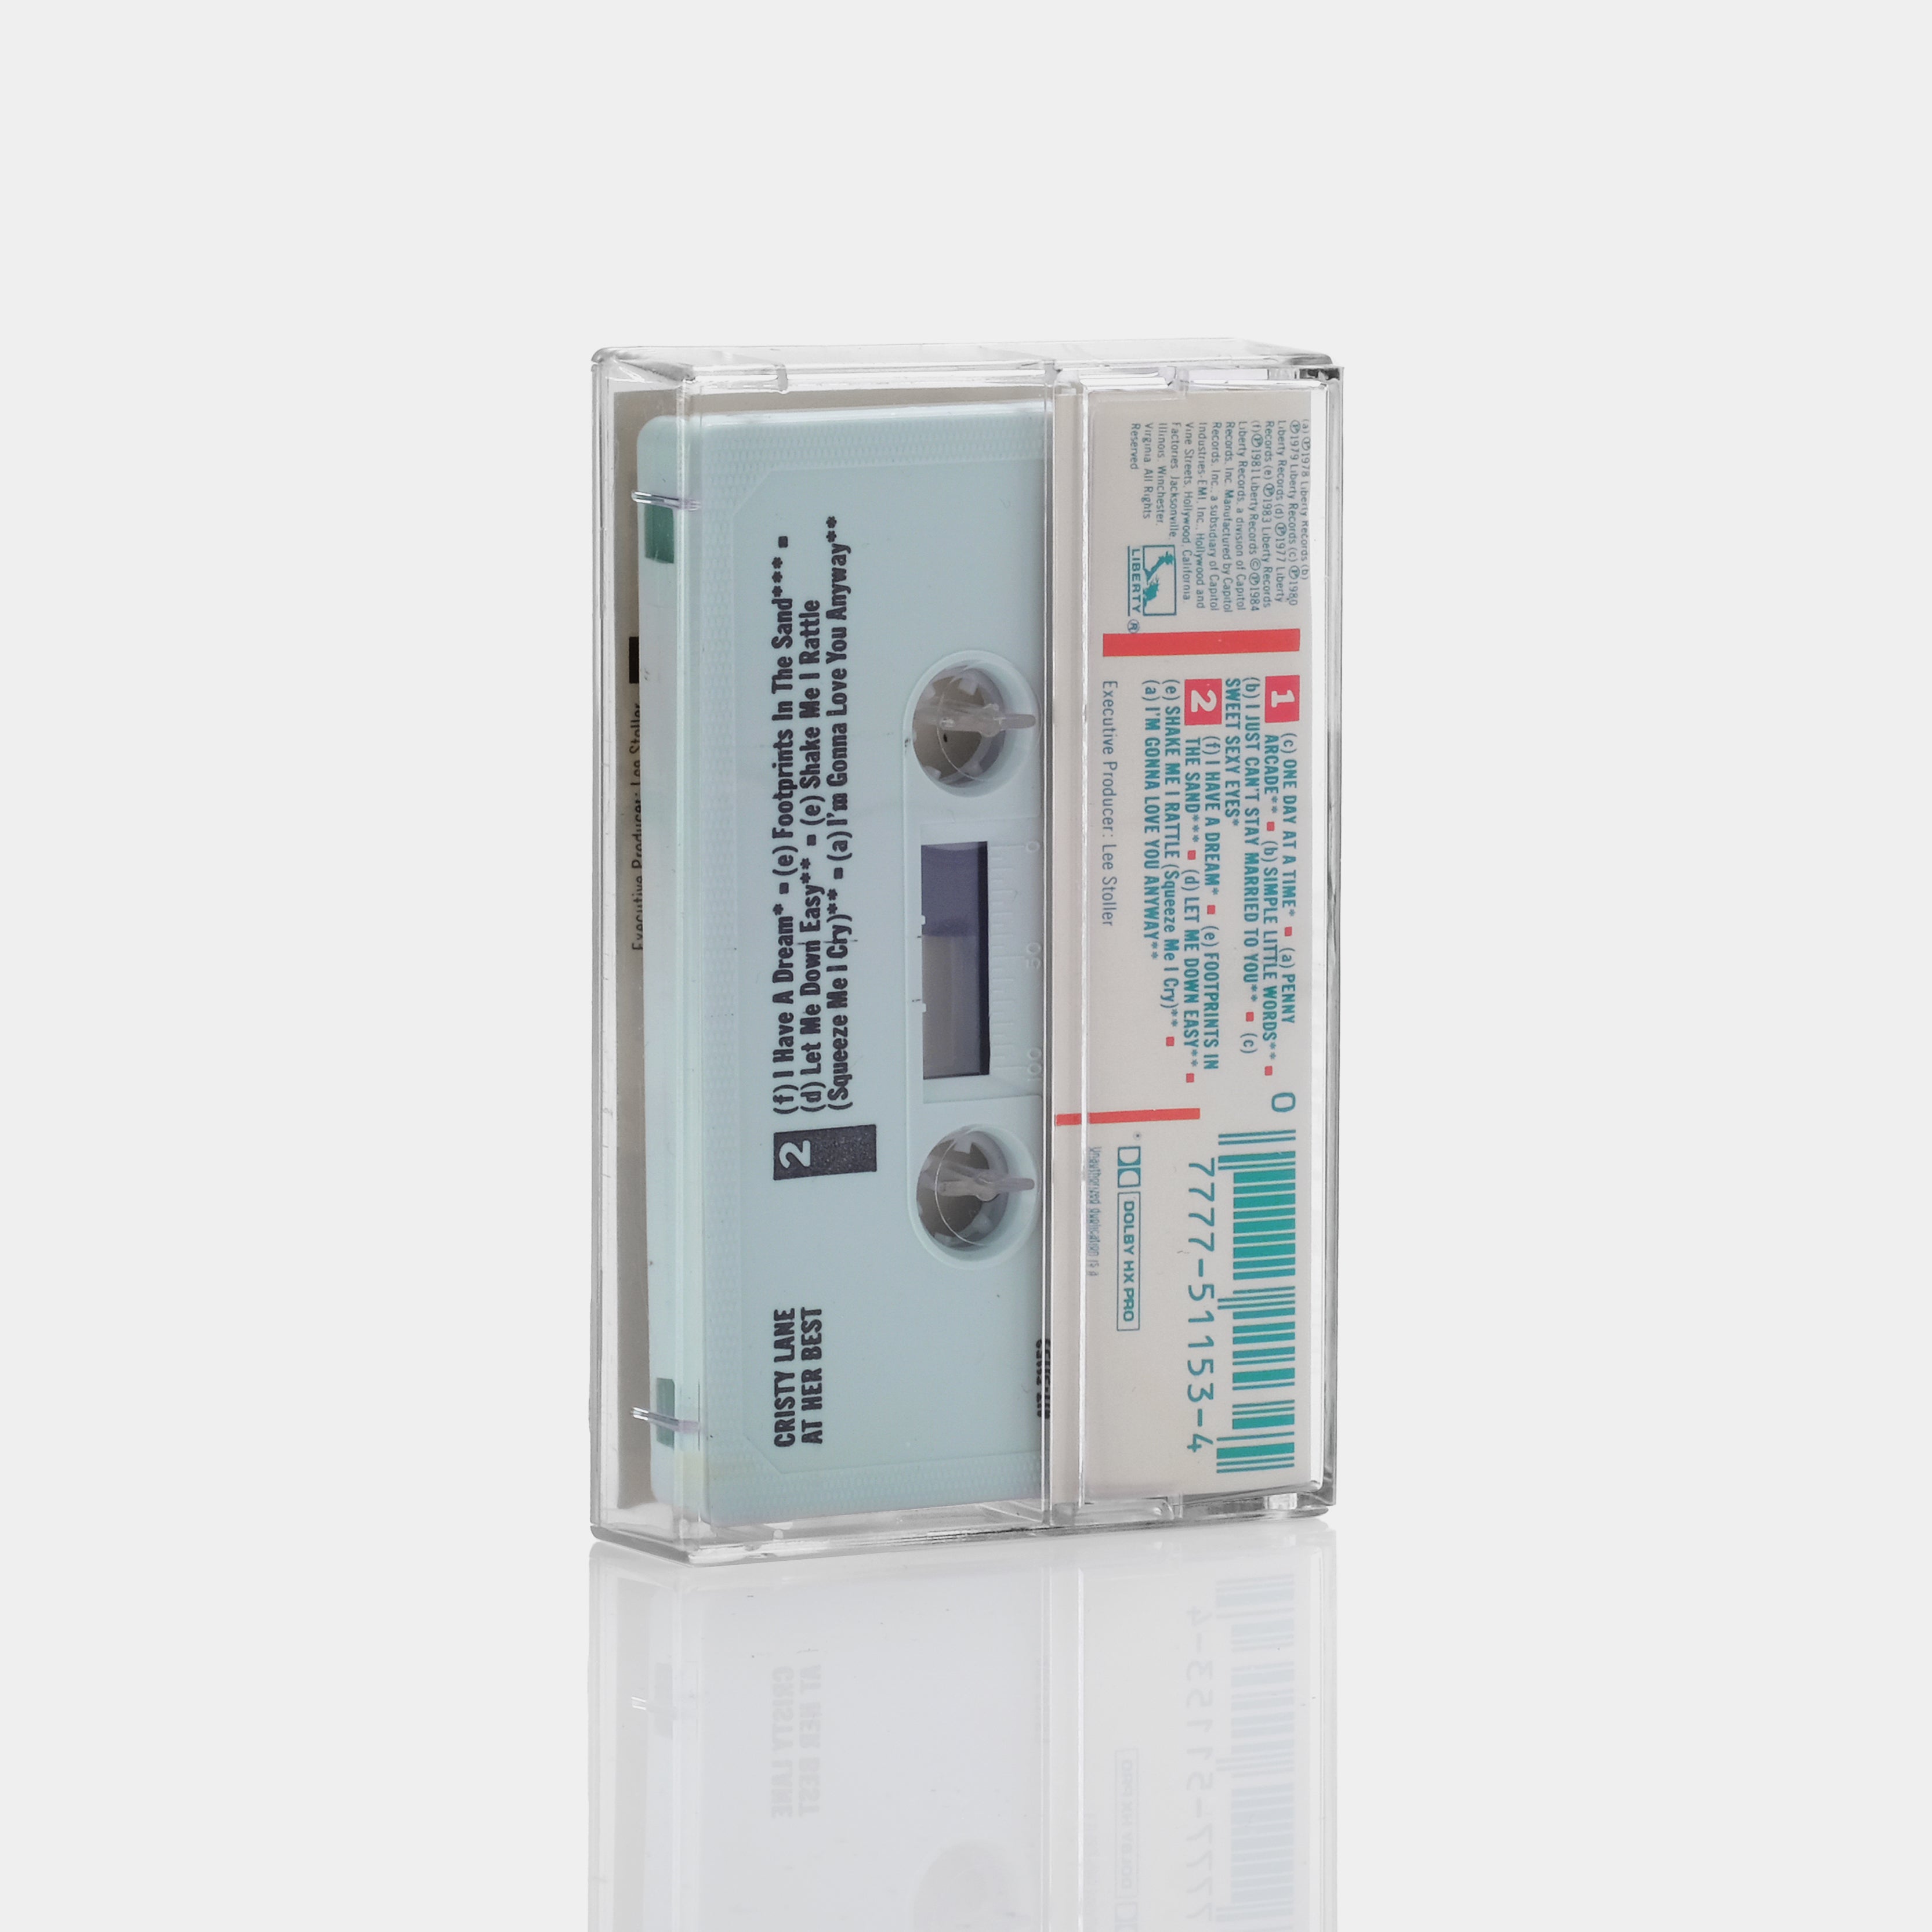 Cristy Lane - At Her Best Cassette Tape